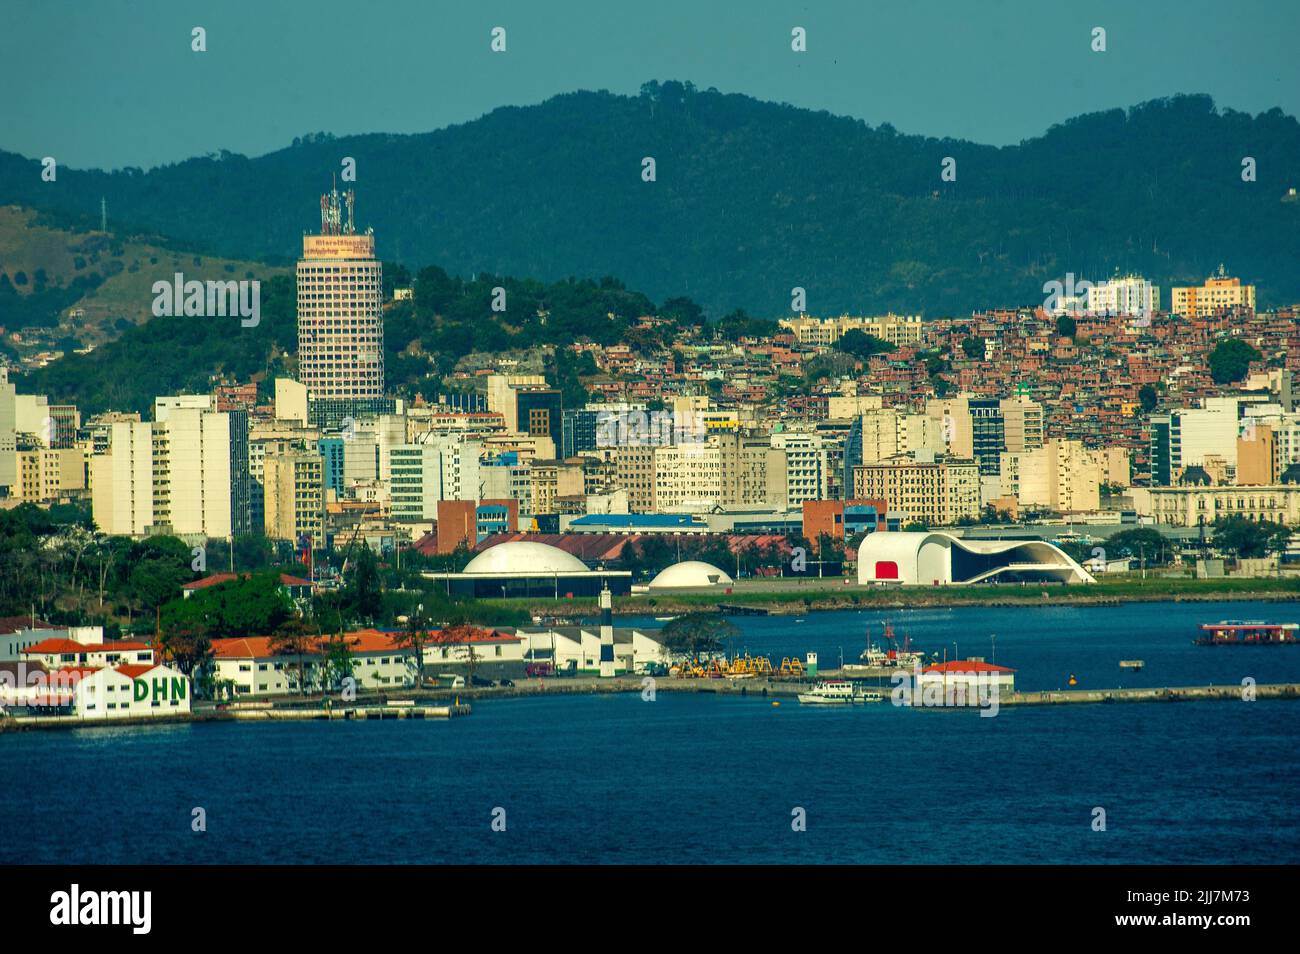 Ciudad de Niteroi cerca de Río de Janeiro, separada por la Bahía de Guanabara. A la derecha, el popular proyecto teatral del famoso arquitecto Oscar Niemeyer Brasil Foto de stock